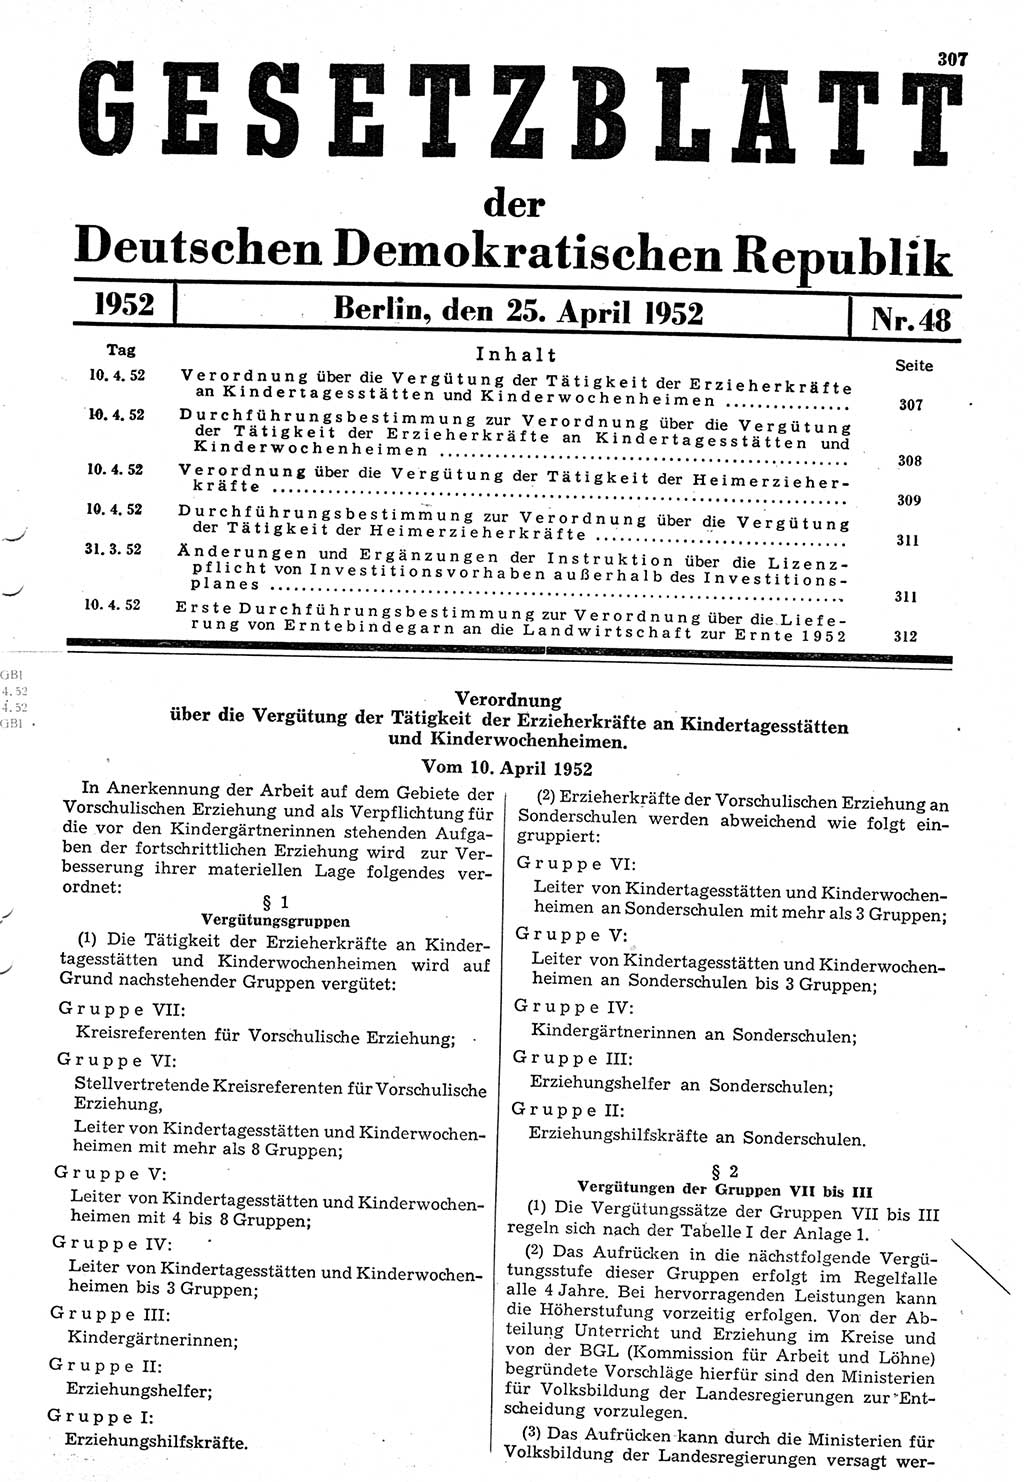 Gesetzblatt (GBl.) der Deutschen Demokratischen Republik (DDR) 1952, Seite 307 (GBl. DDR 1952, S. 307)